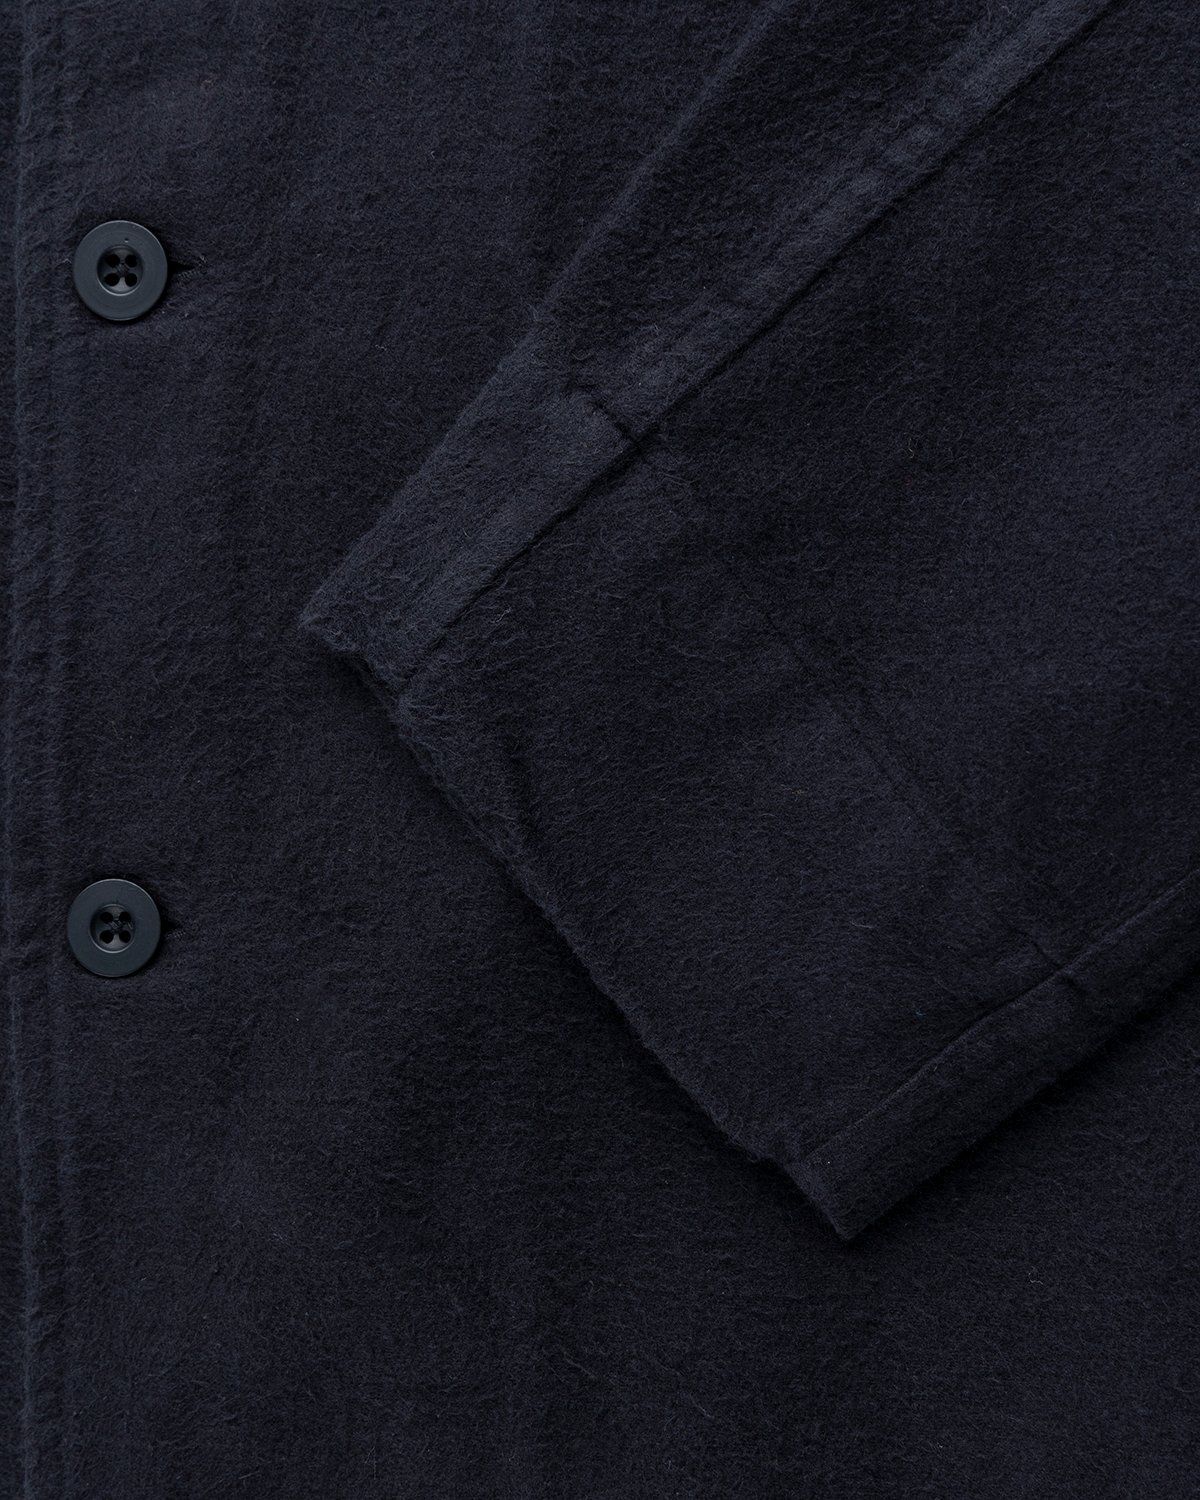 Our Legacy – Evening Coach Jacket Black Brushed - Overshirt - Black - Image 4